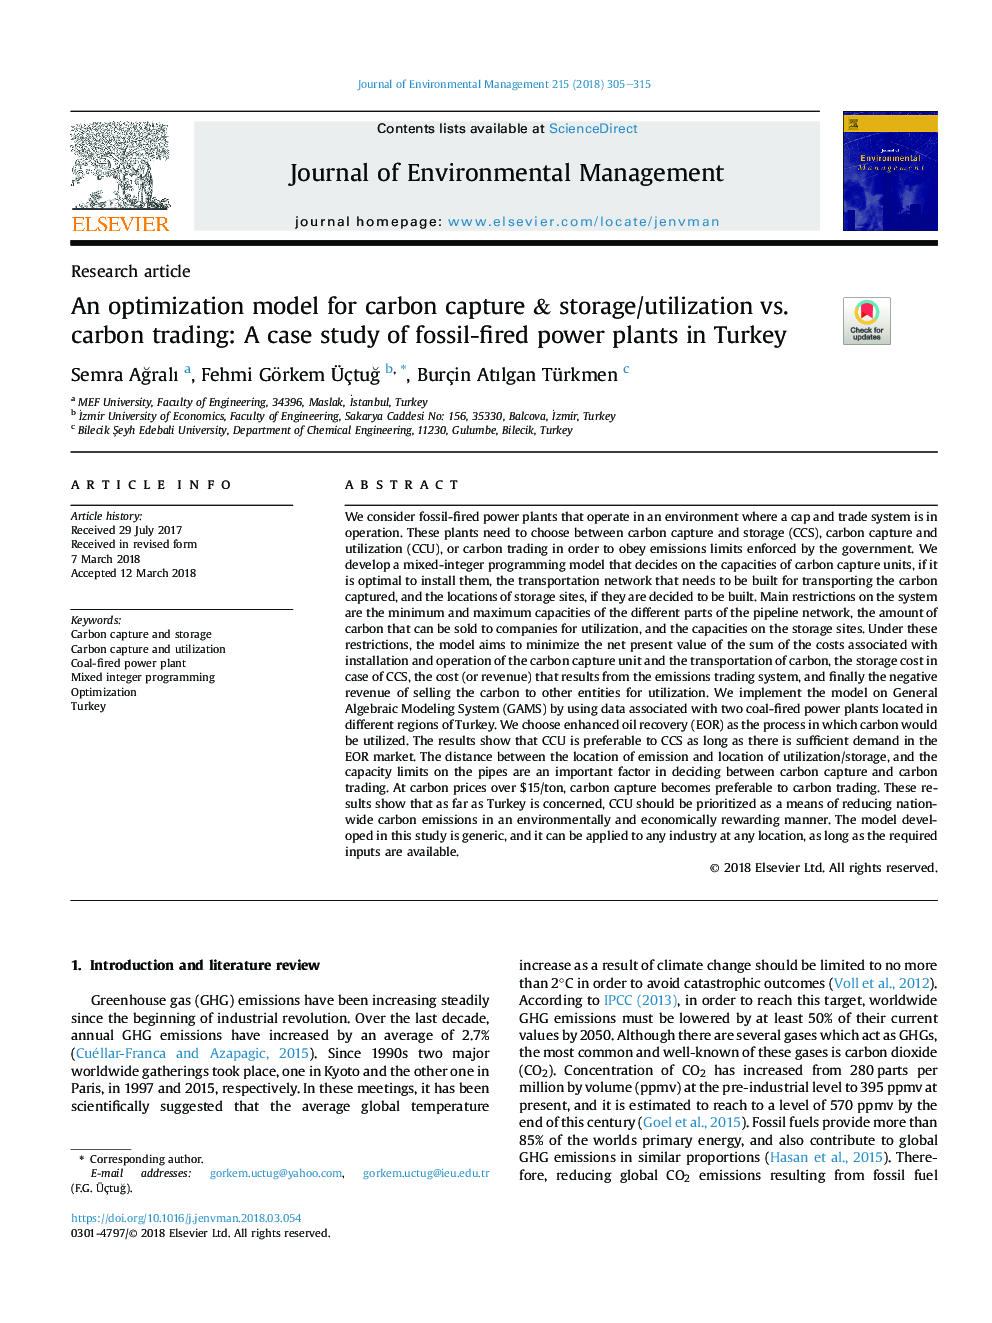 یک مدل بهینه سازی برای جذب کربن و ذخیره / مصرف در برابر تجارت کربن: مطالعه موردی نیروگاه های فسیلی در ترکیه 